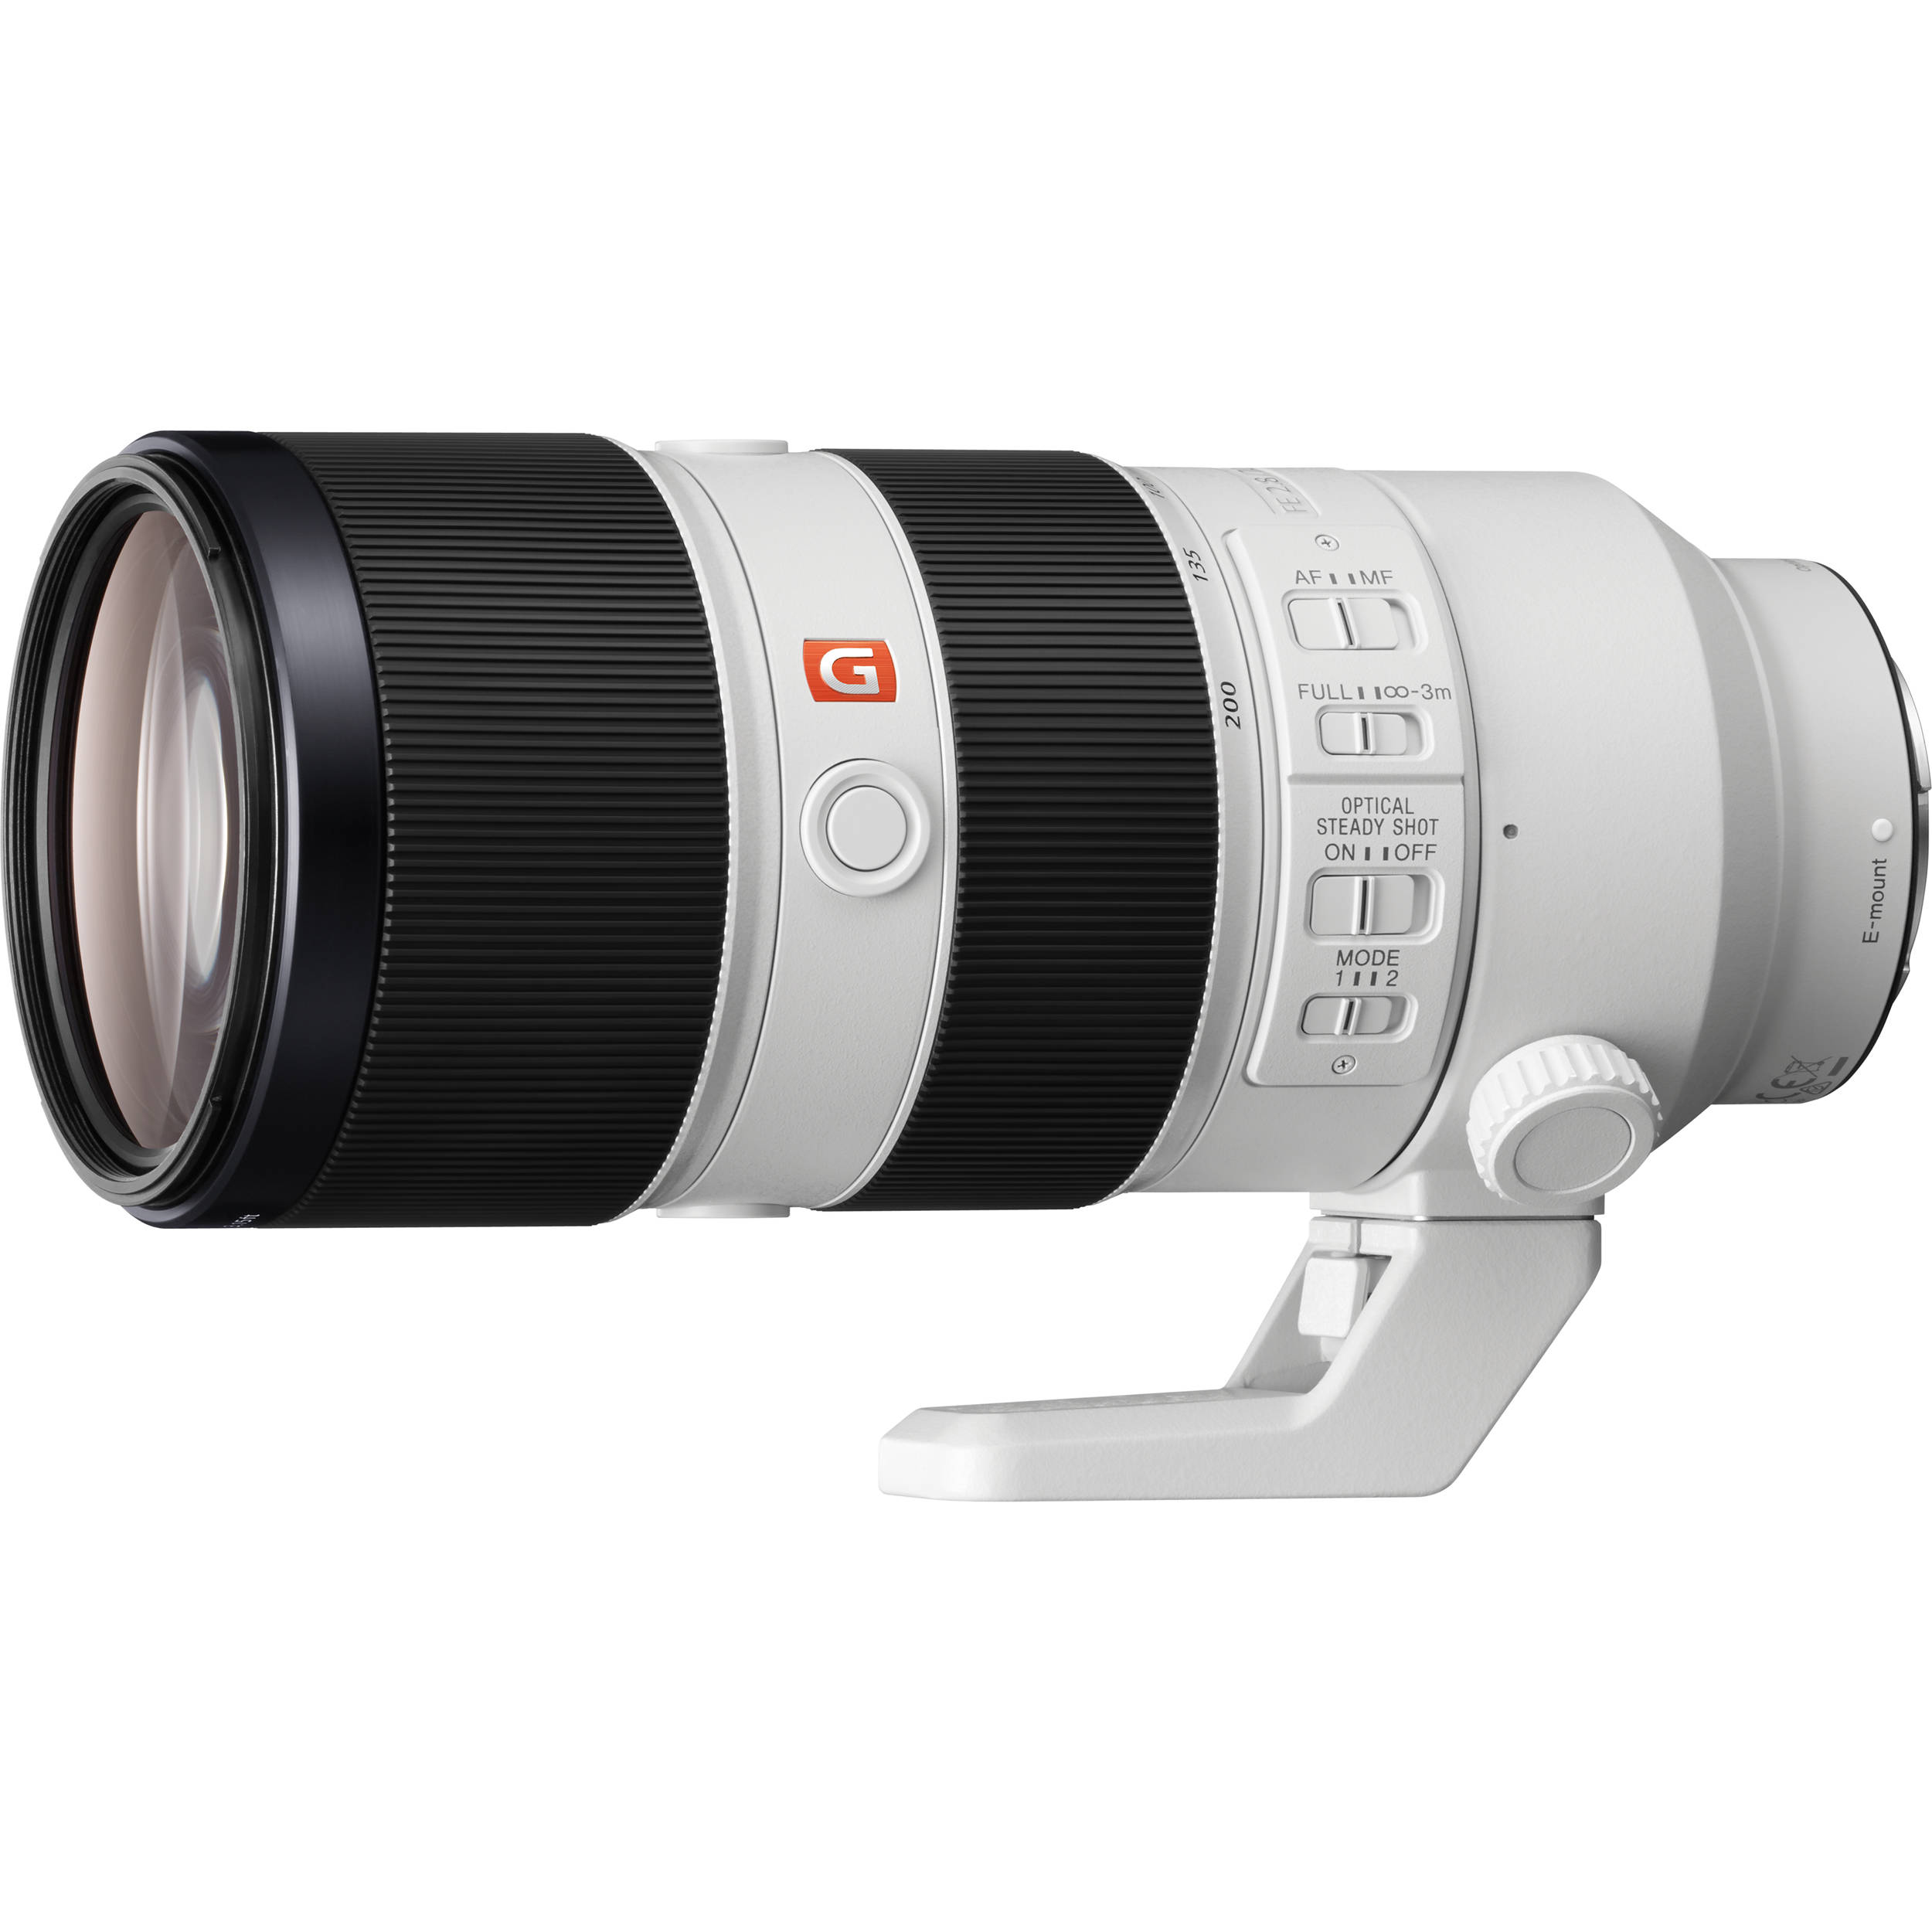 لنز دوربین سونی مدل FE 70-200mm f/2.8 GM OSS